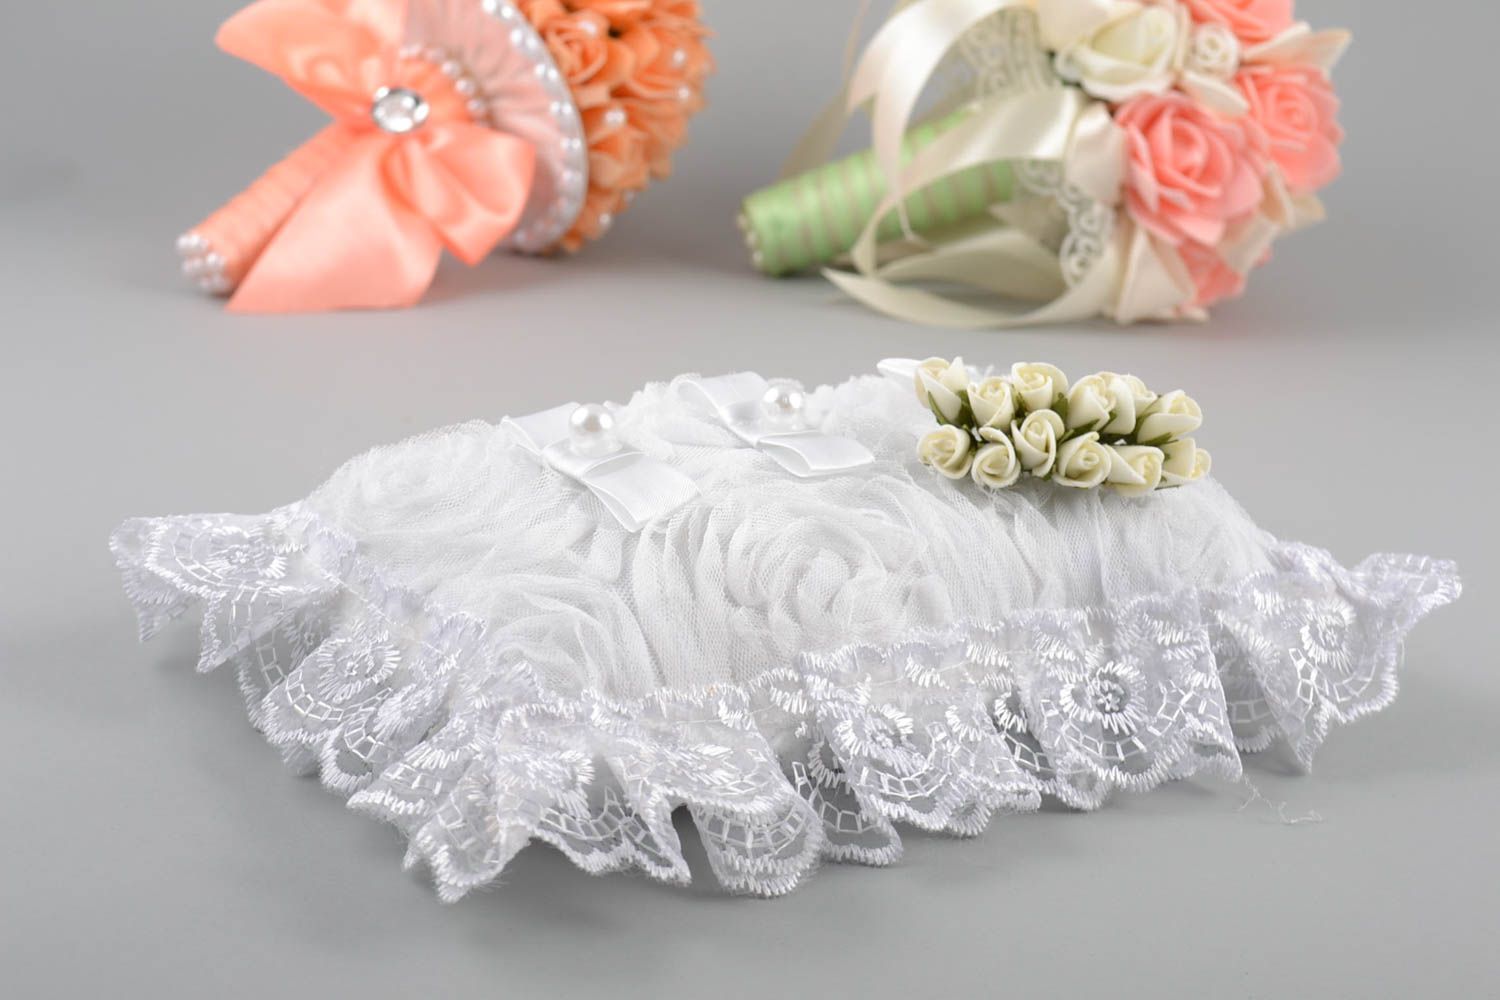 Свадебная подушечка для колец прямоугольная белая с цветами красивая хэнд мейд фото 1